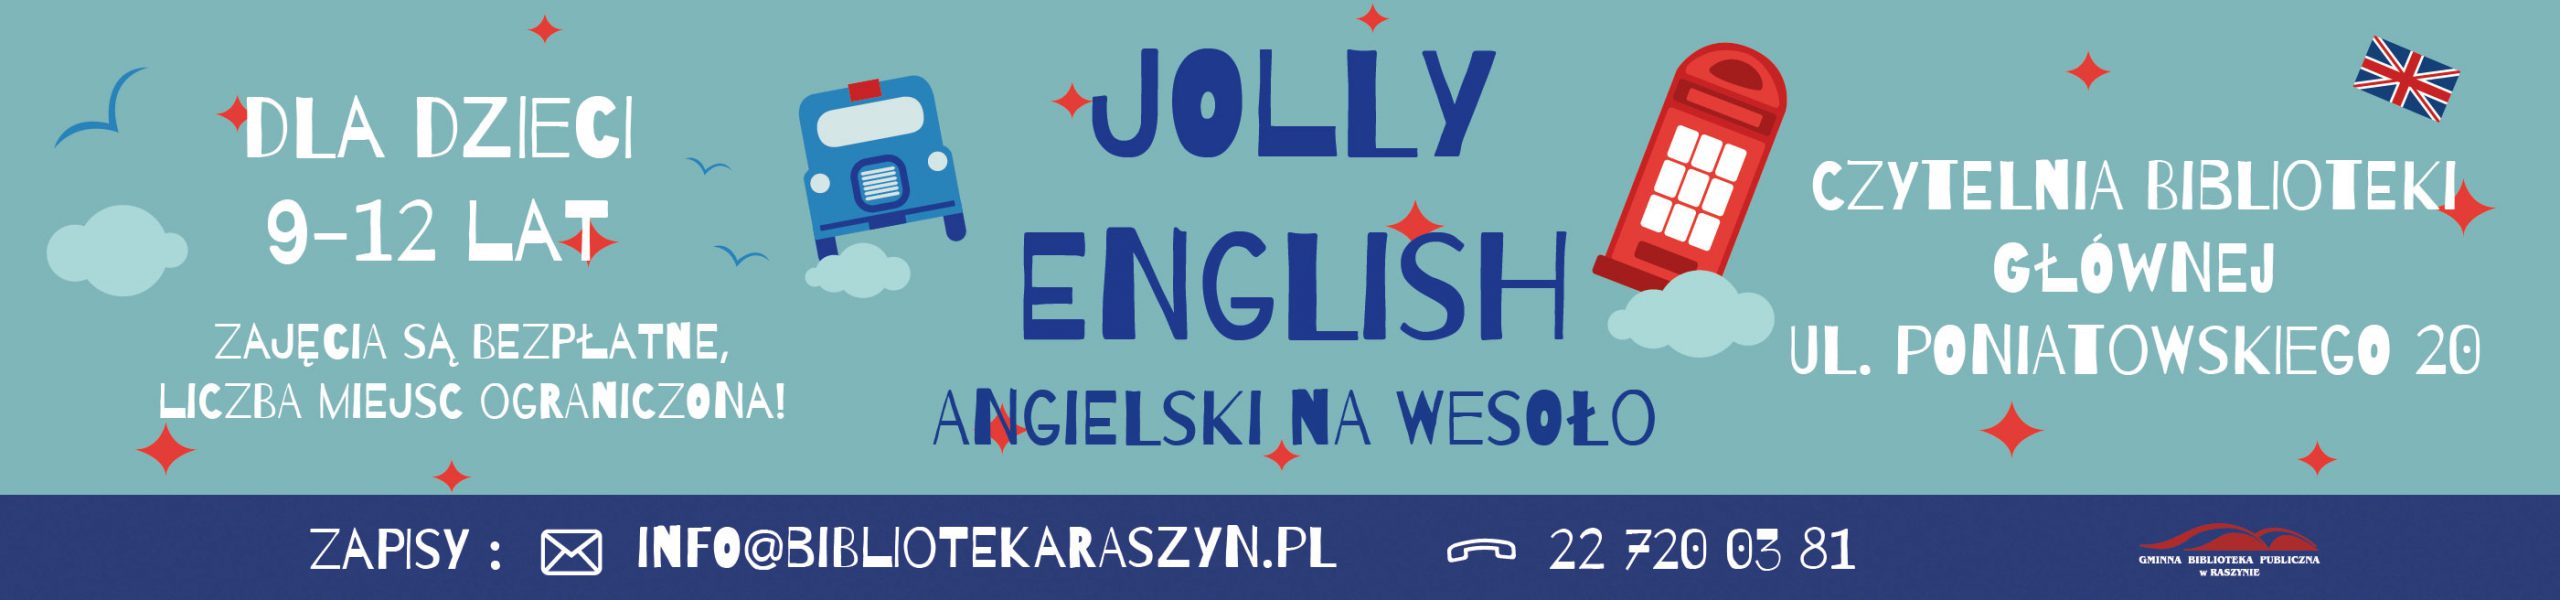 jolly-english-baner